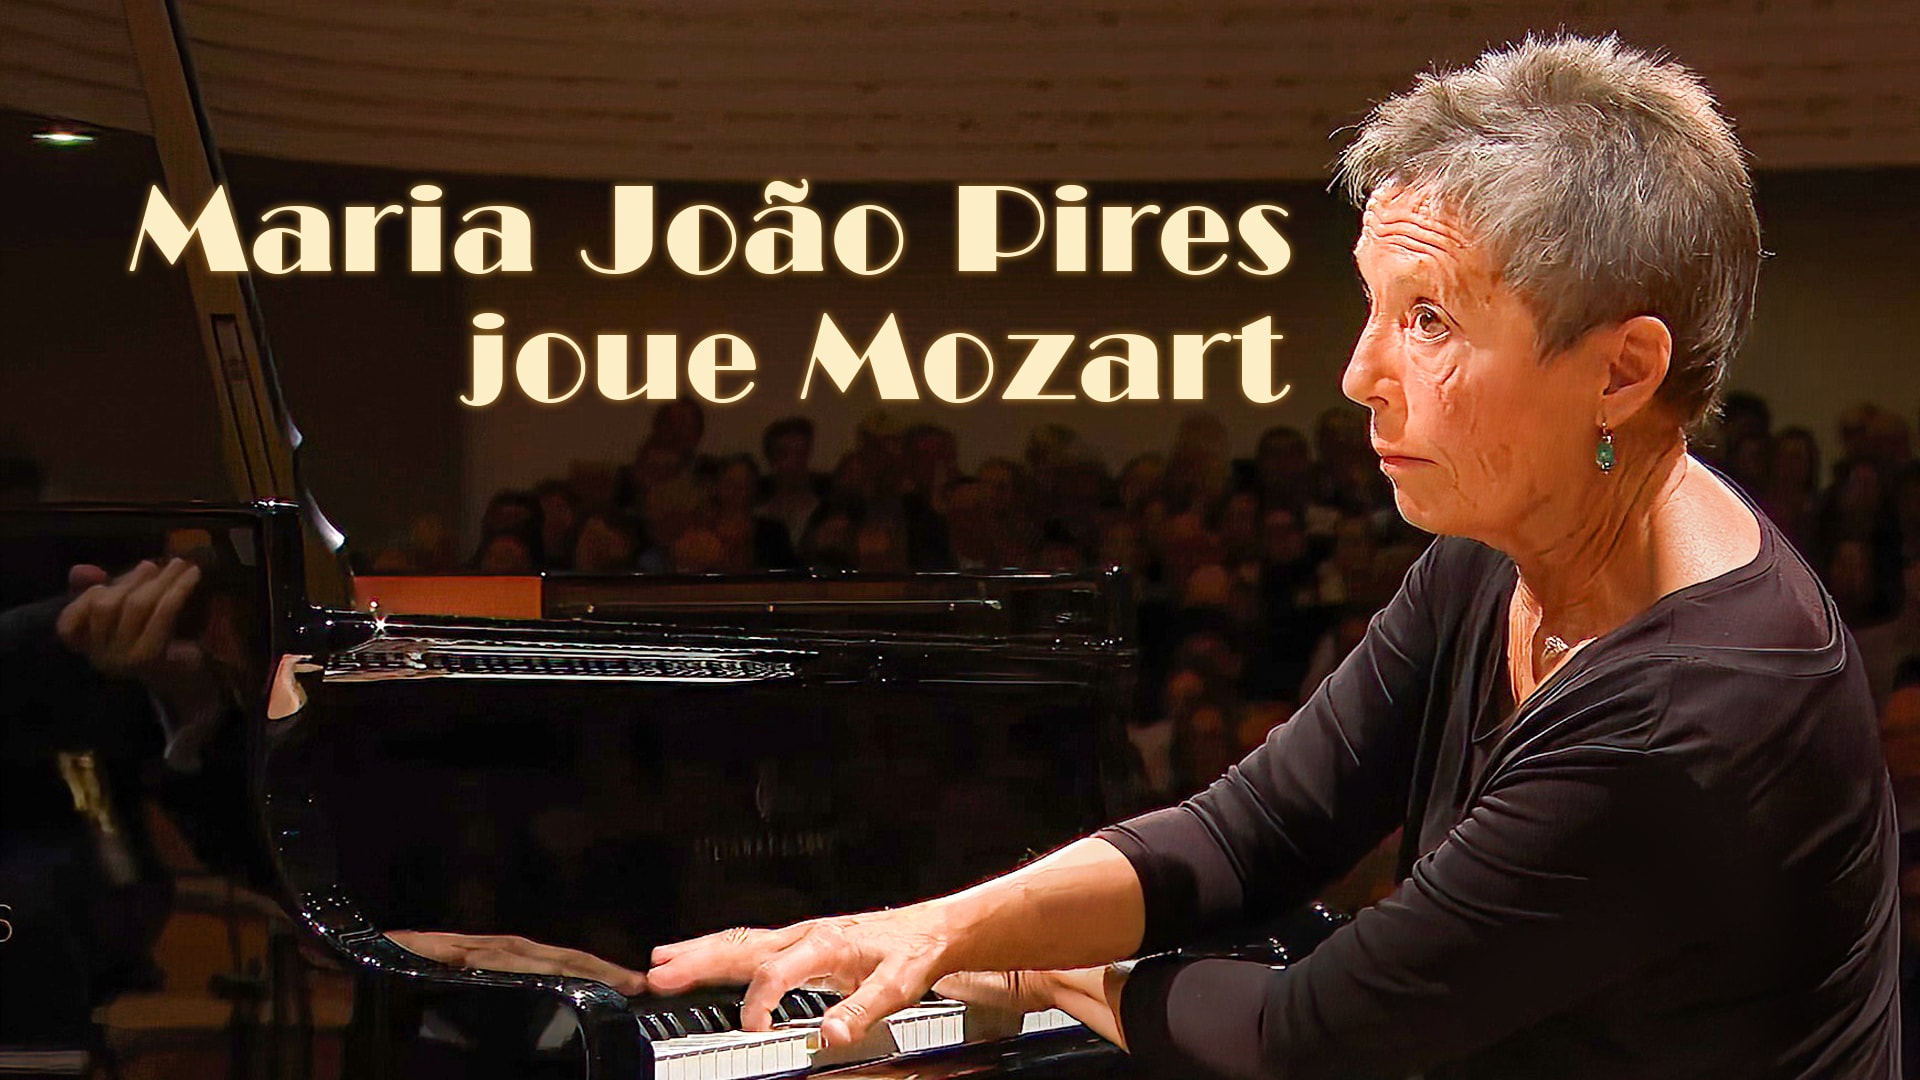 Maria João Pires joue Mozart